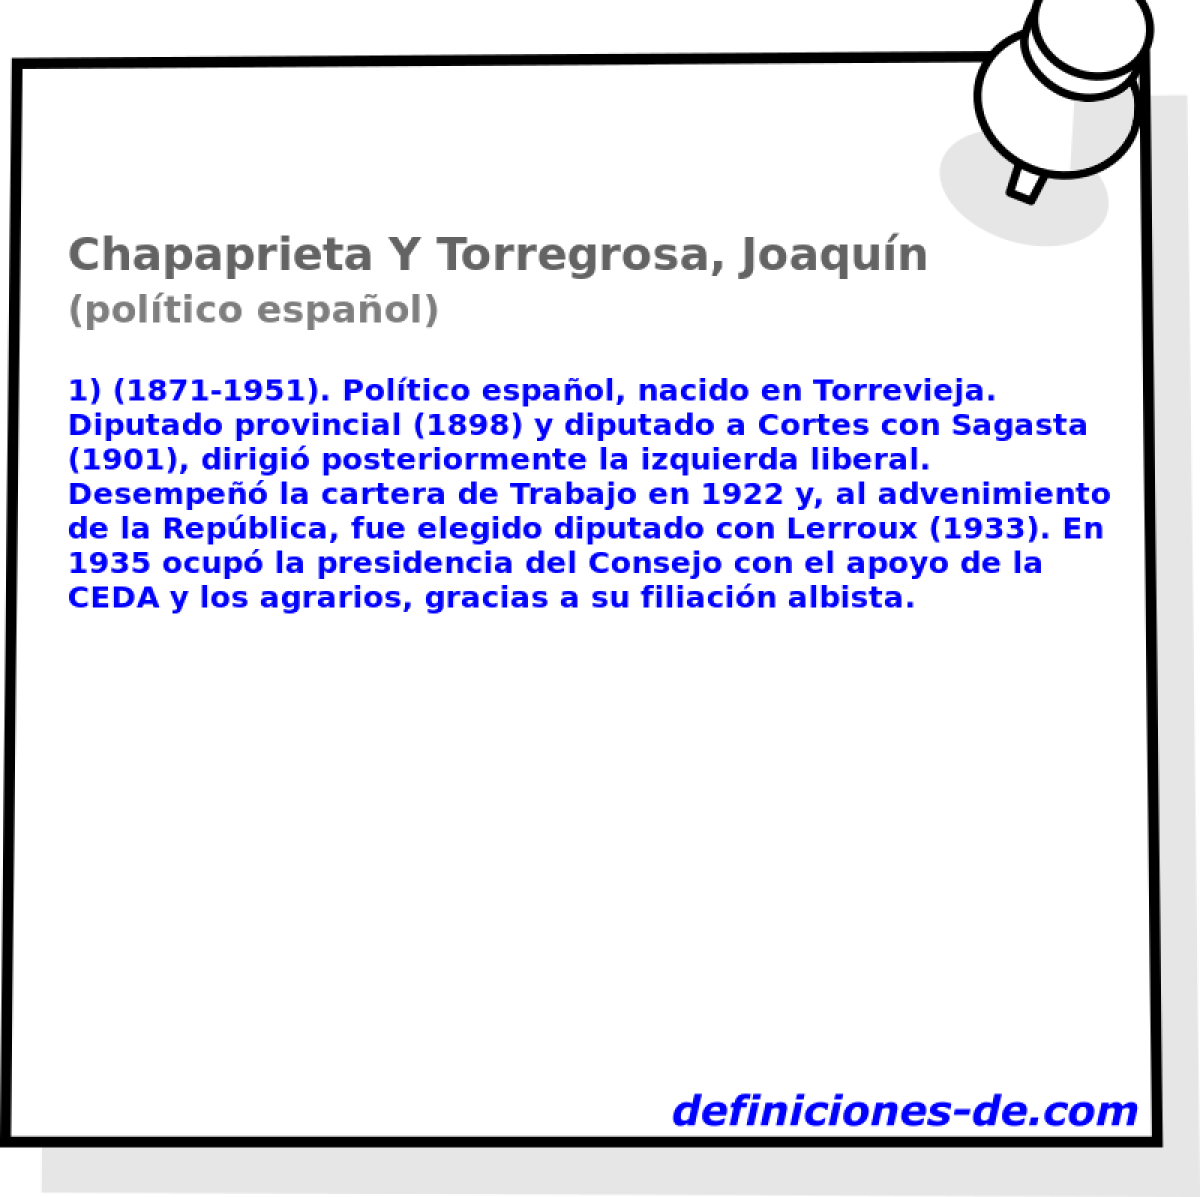 Chapaprieta Y Torregrosa, Joaqun (poltico espaol)